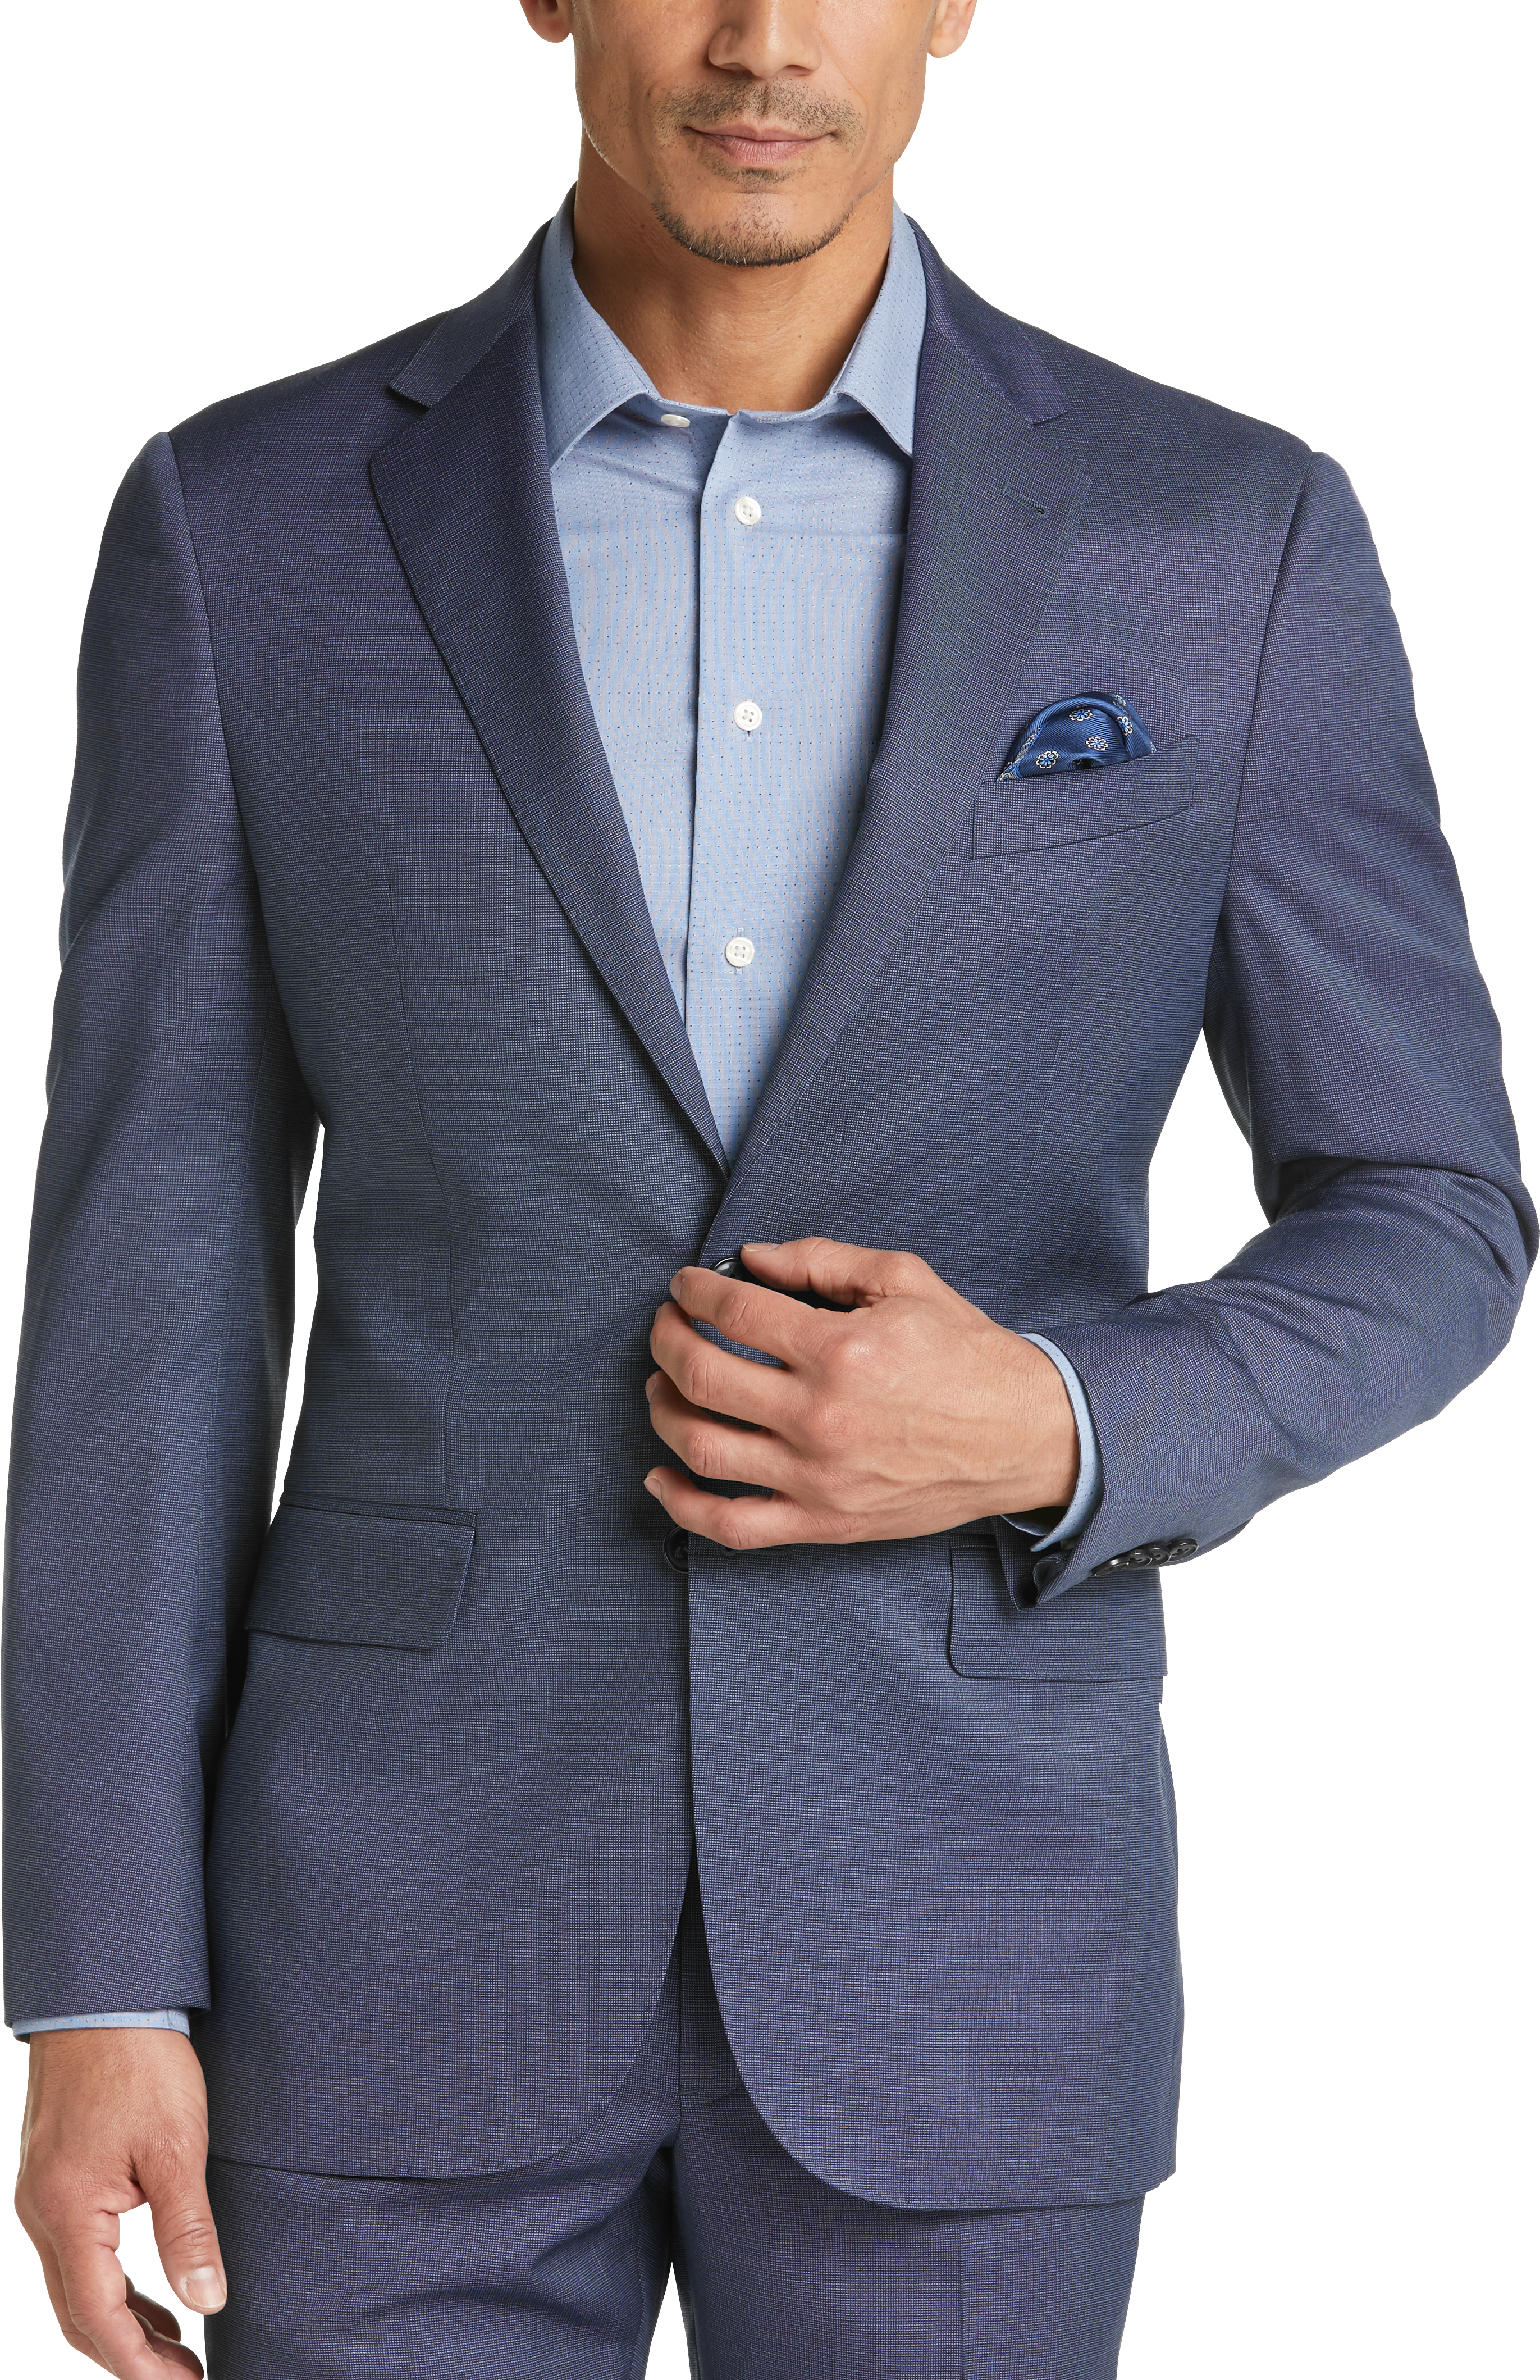 Joseph Abboud Heritage Blue Tic Modern Fit Suit - Men's Sale | Men's ...